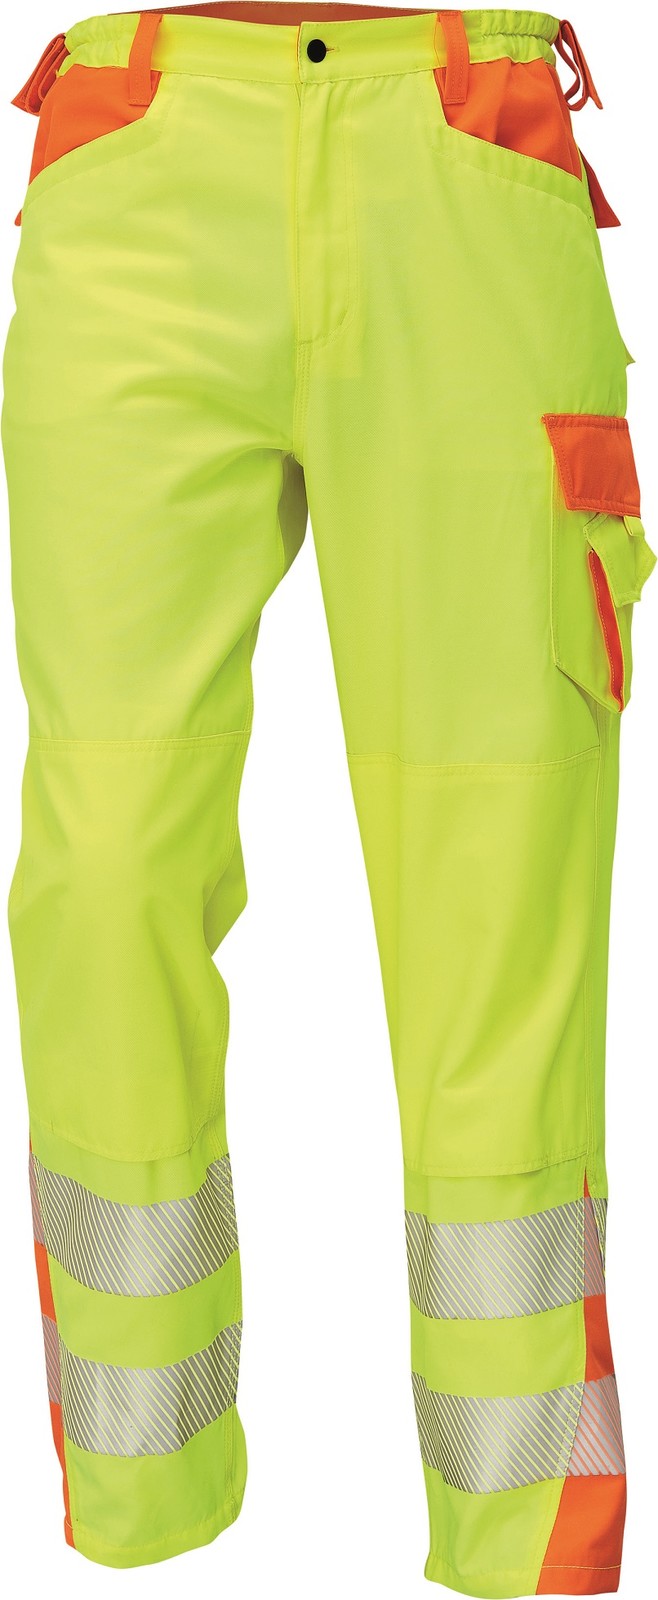 Reflexné pracovné nohavice Cerva Latton - veľkosť: 58, farba: žltá/oranžová